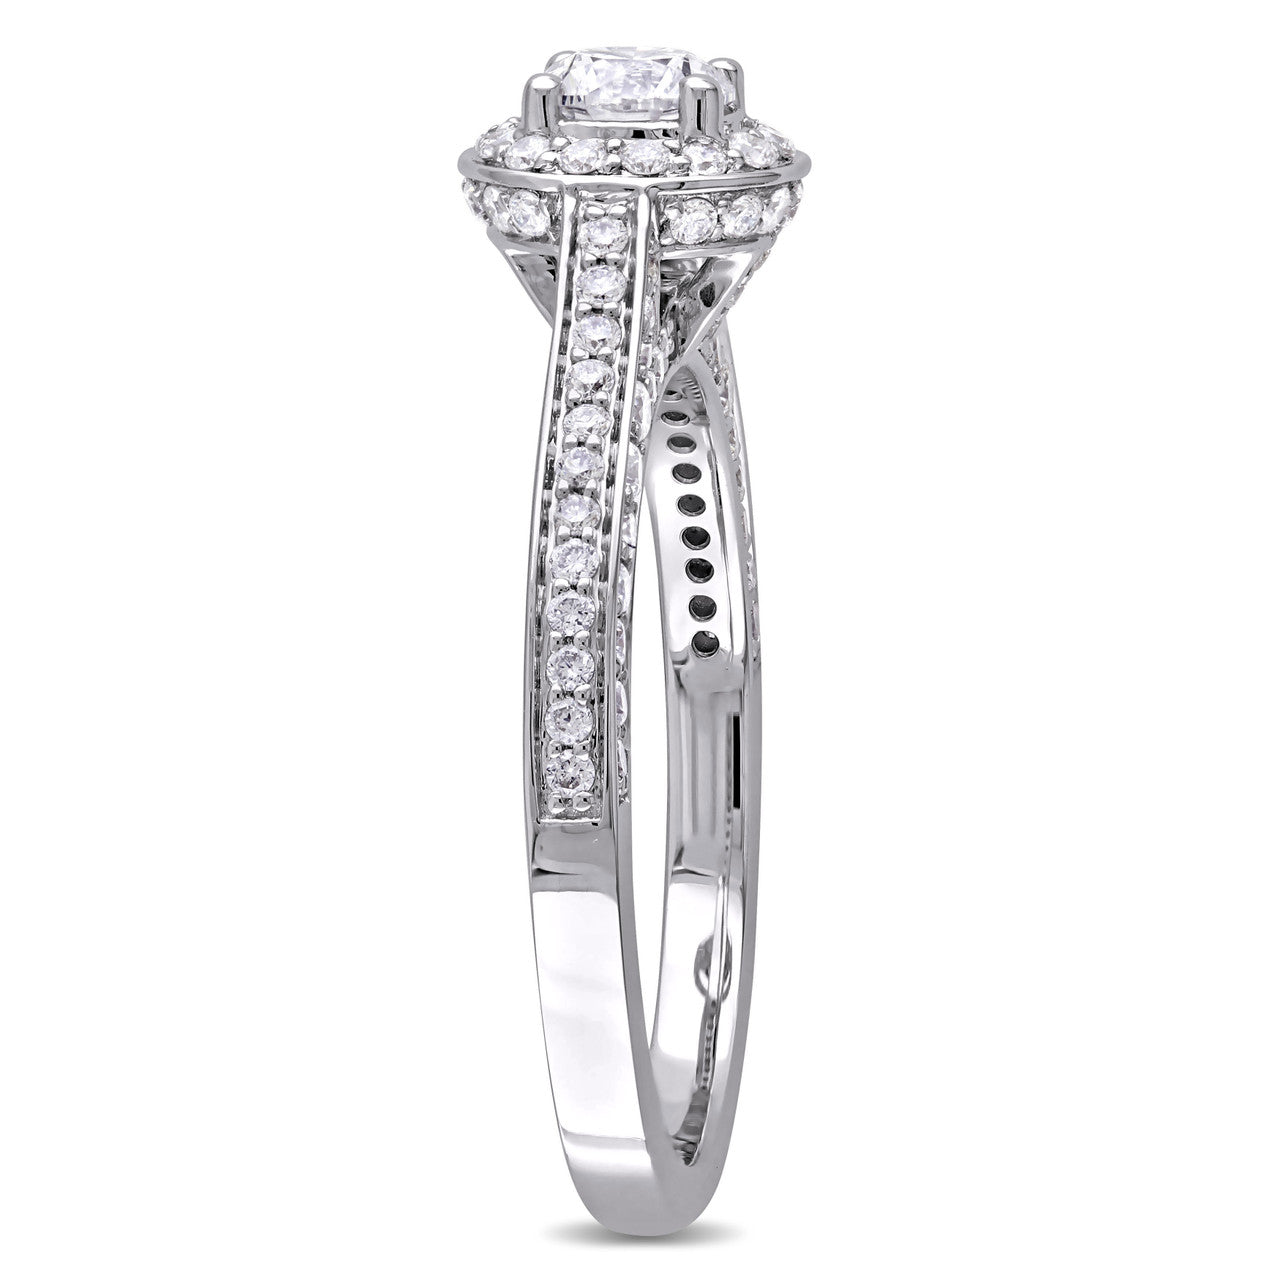 Ice Jewellery 1 CT Diamond TW Halo Ring in 14k White Gold - 75000004527 | Ice Jewellery Australia